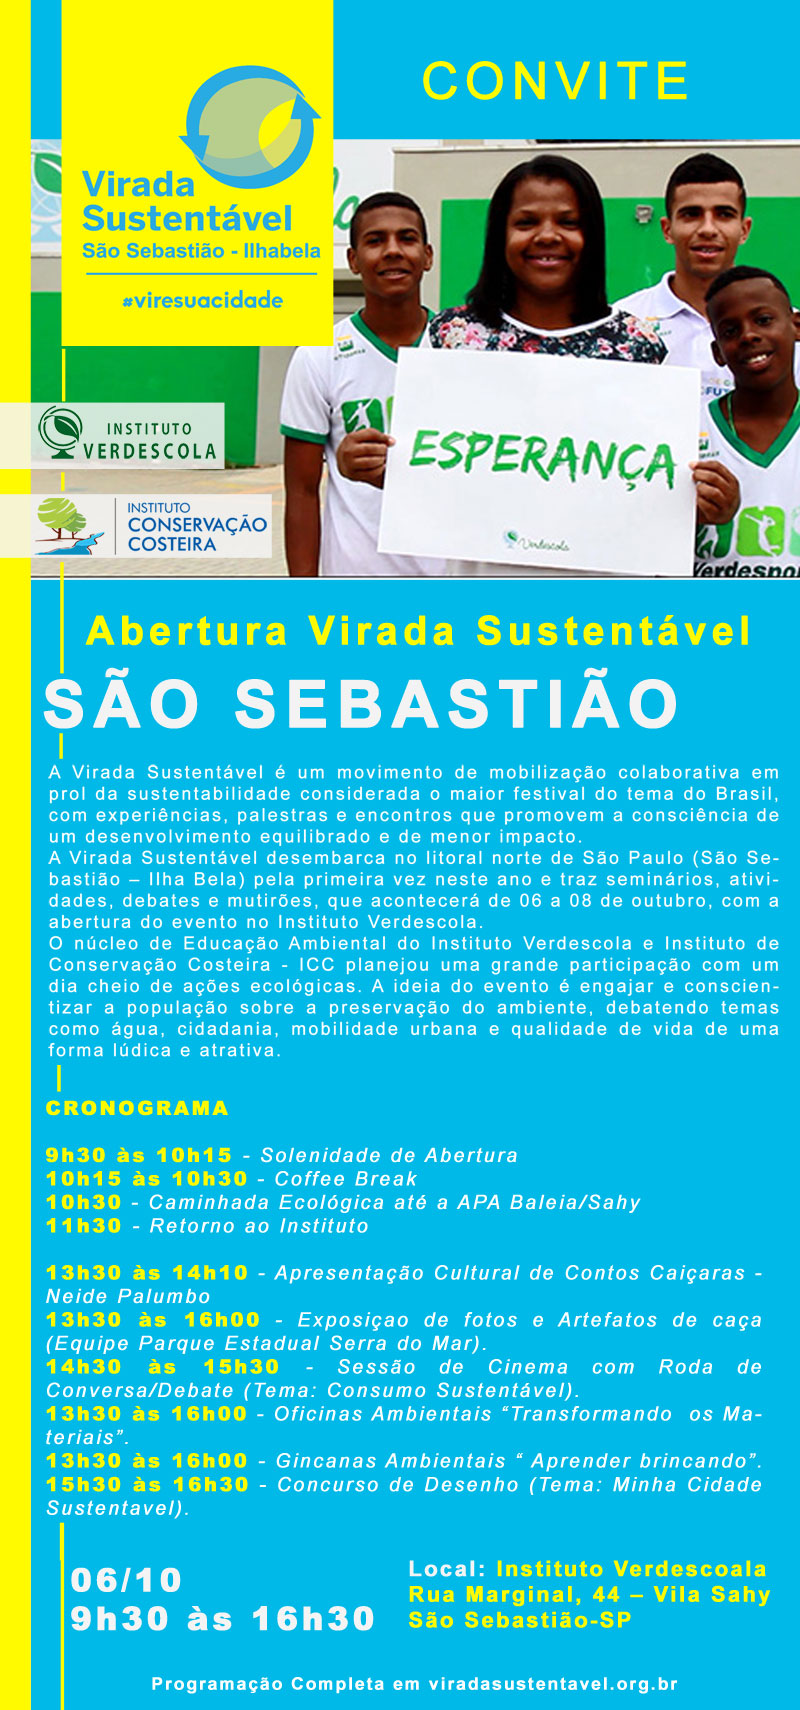 Virada Sustentável São Sebastião Ilhabela - Programação de abertura Verdescola e ICC